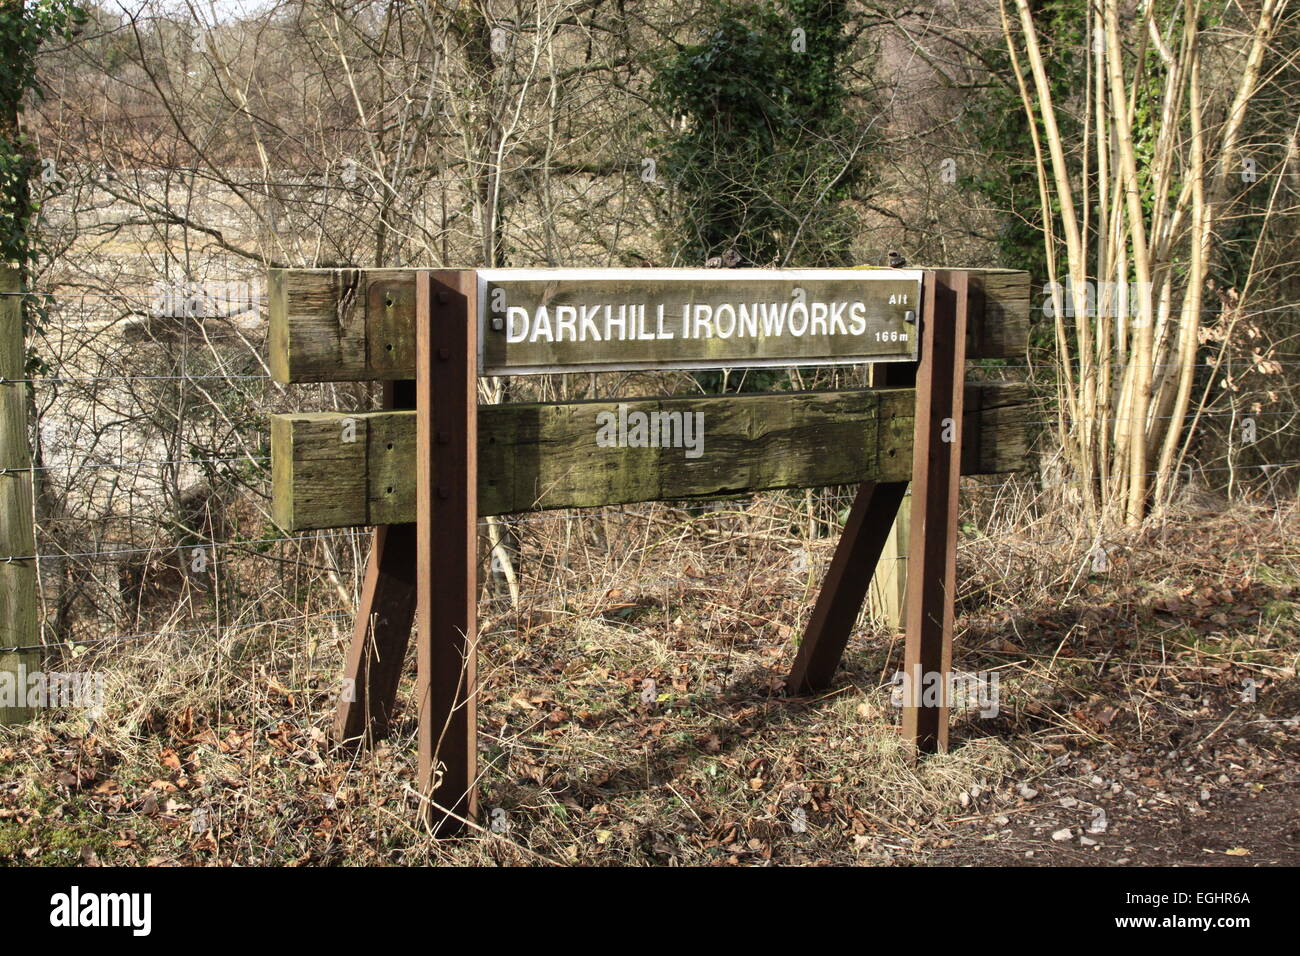 Darkhill Ironworks railway sign, Stock Photo